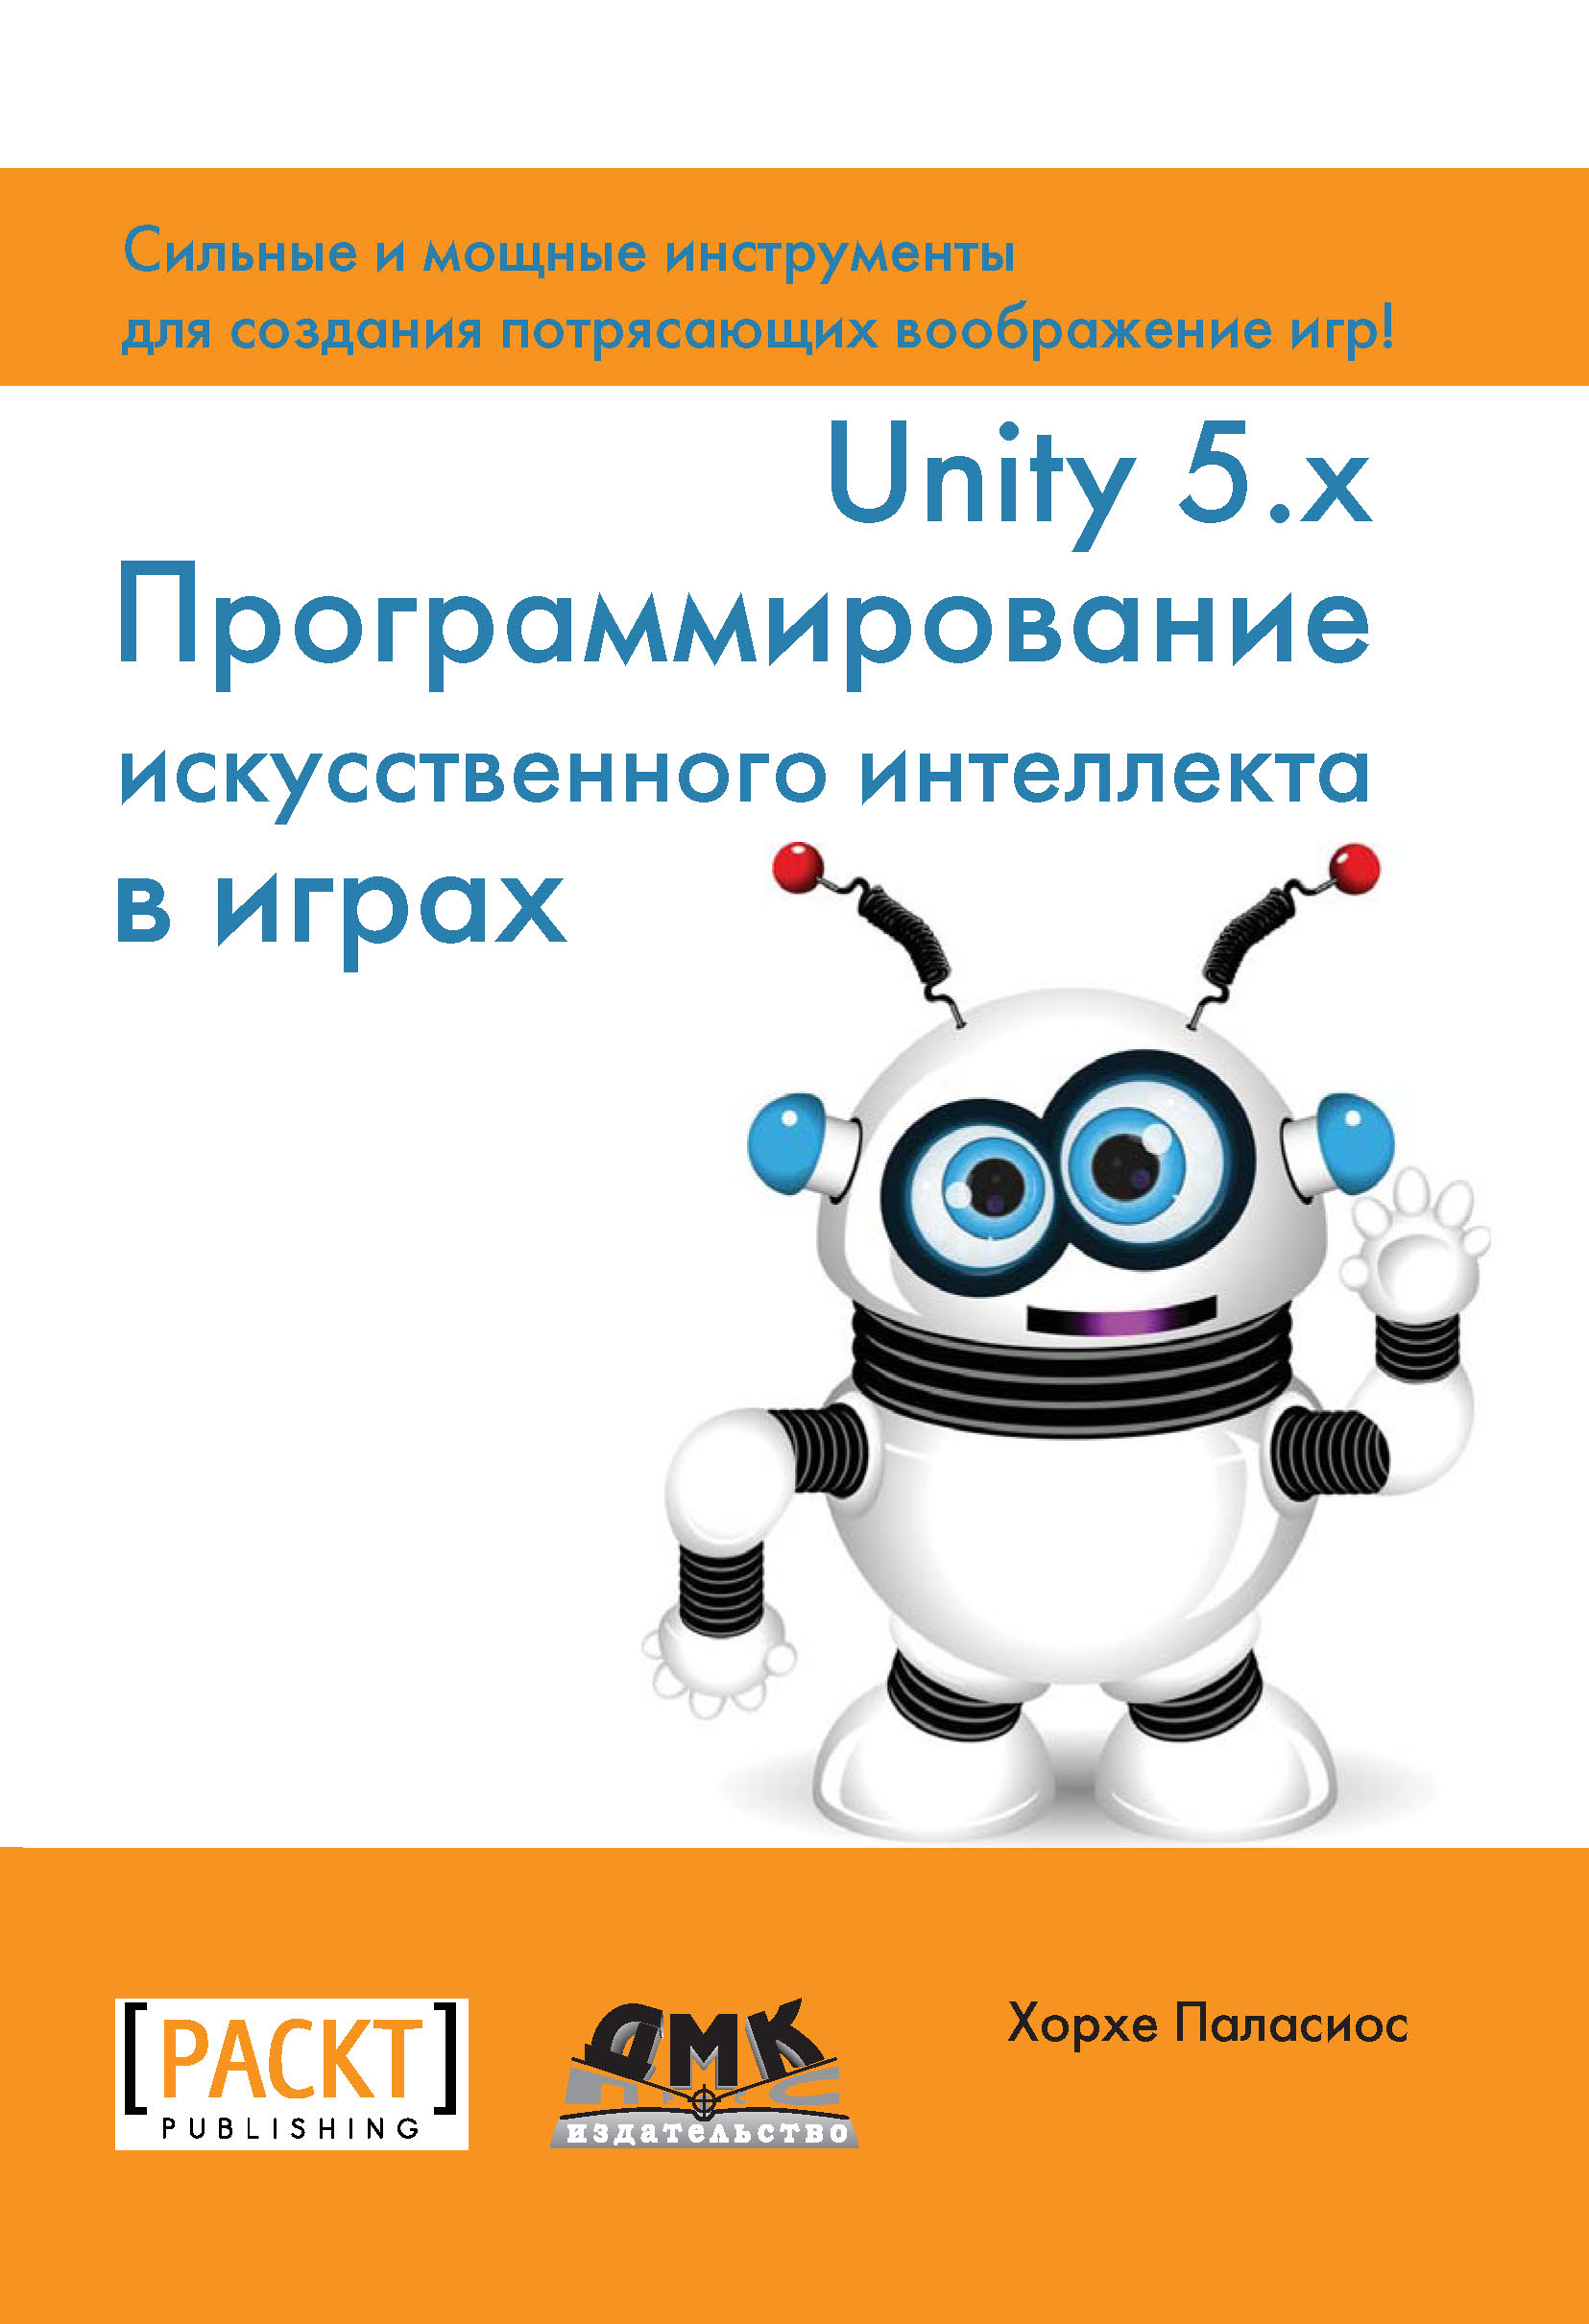 Книга  Unity 5.x. Программирование искусственного интеллекта в играх созданная Хорхе Паласиос, Р. Н. Рагимов может относится к жанру зарубежная компьютерная литература, программирование. Стоимость электронной книги Unity 5.x. Программирование искусственного интеллекта в играх с идентификатором 22806440 составляет 559.00 руб.